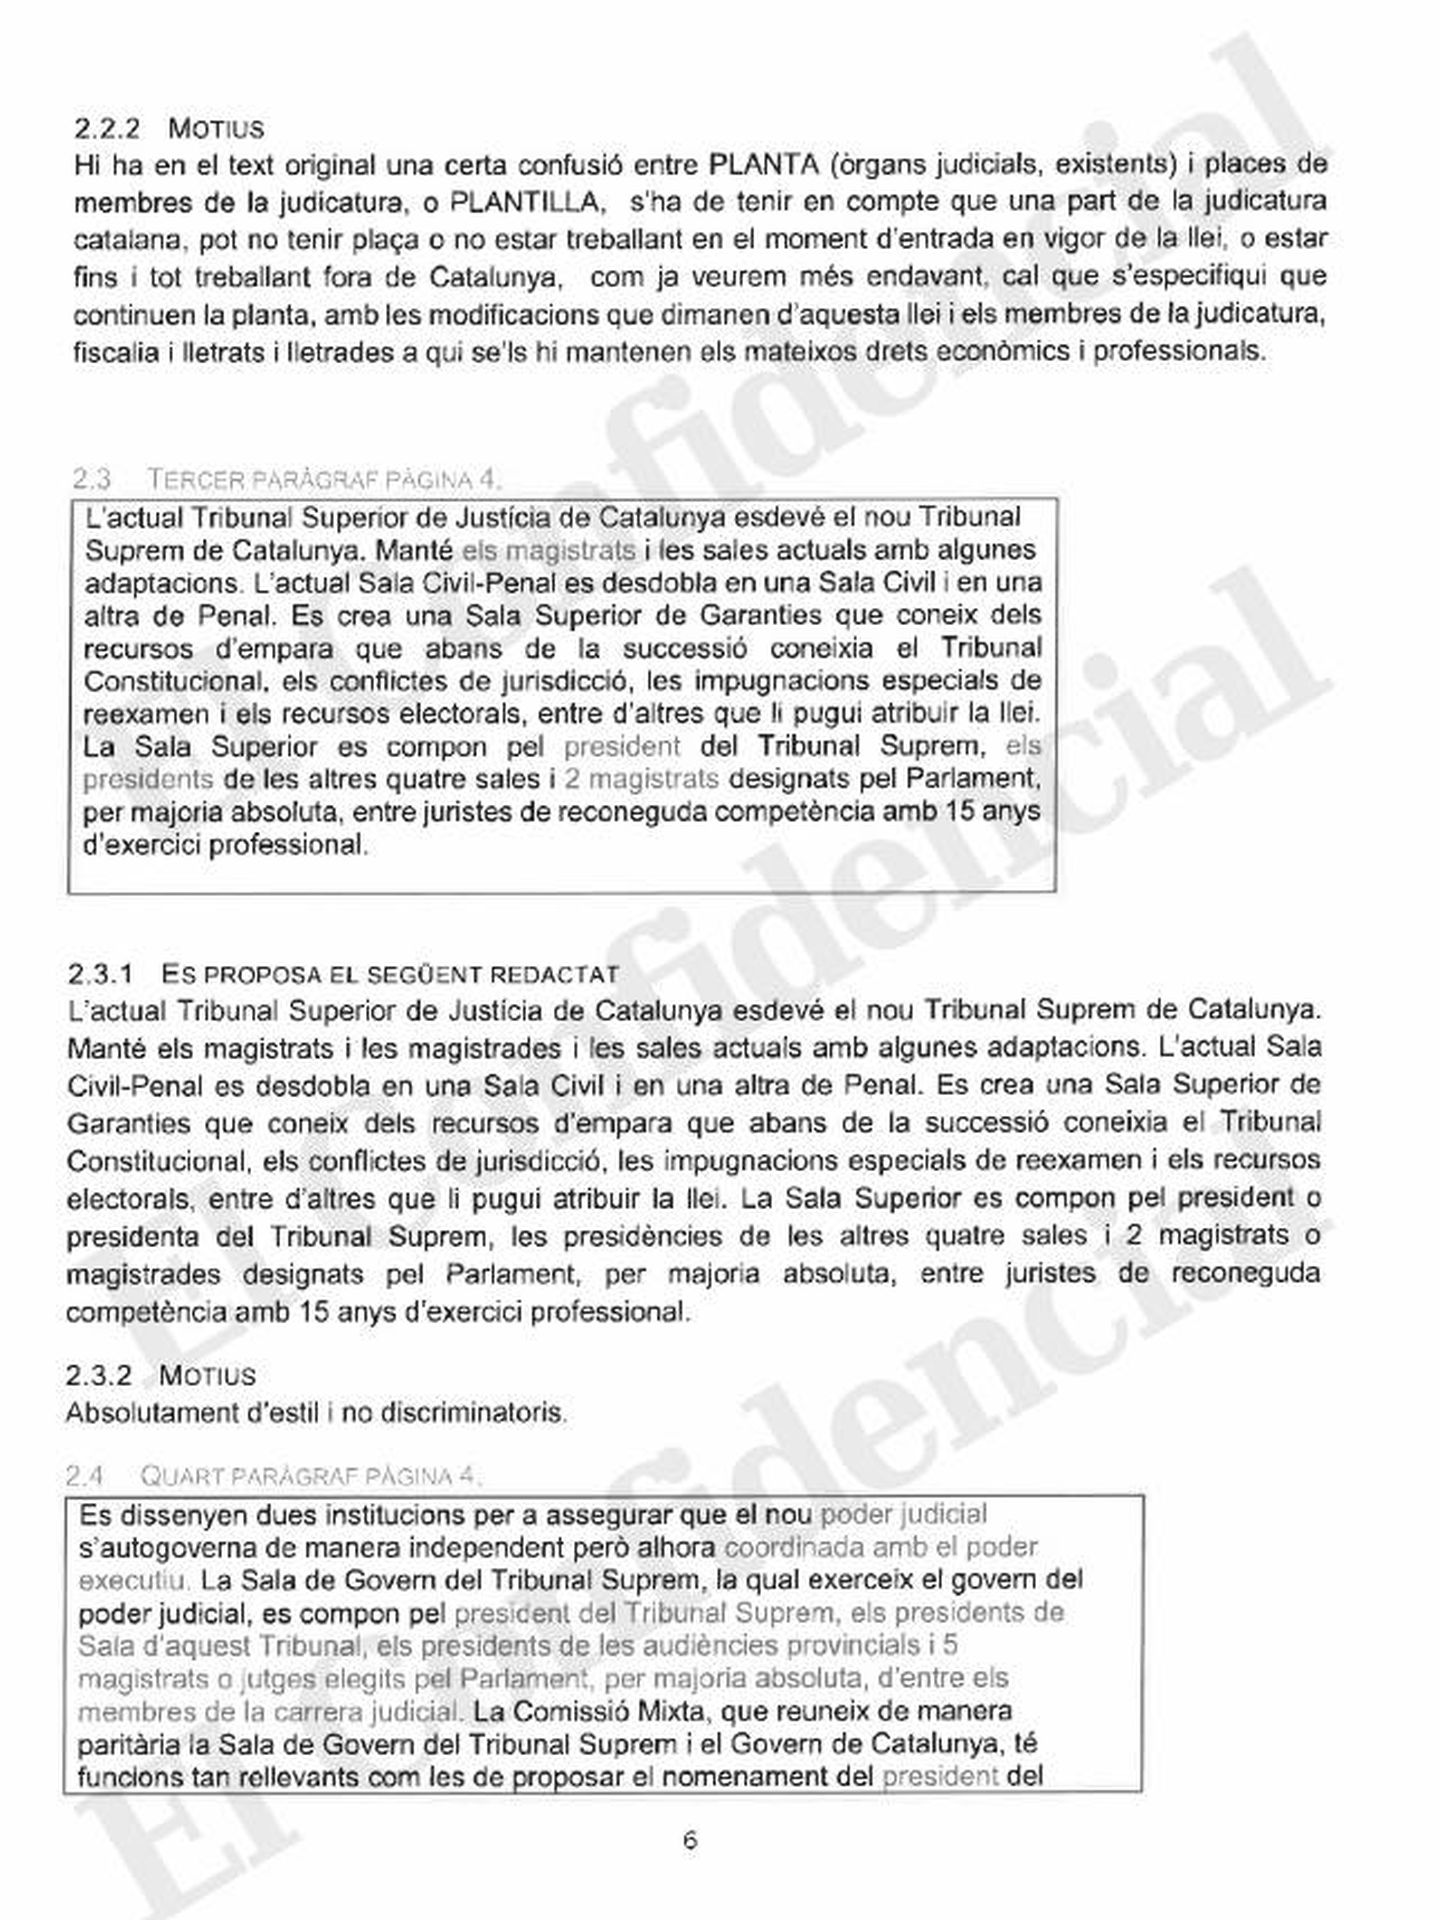 Extracto de documento del ordenador de Santiago Vidal con modificaciones de la ley de transitoriedad. (Pinche para ampliar)